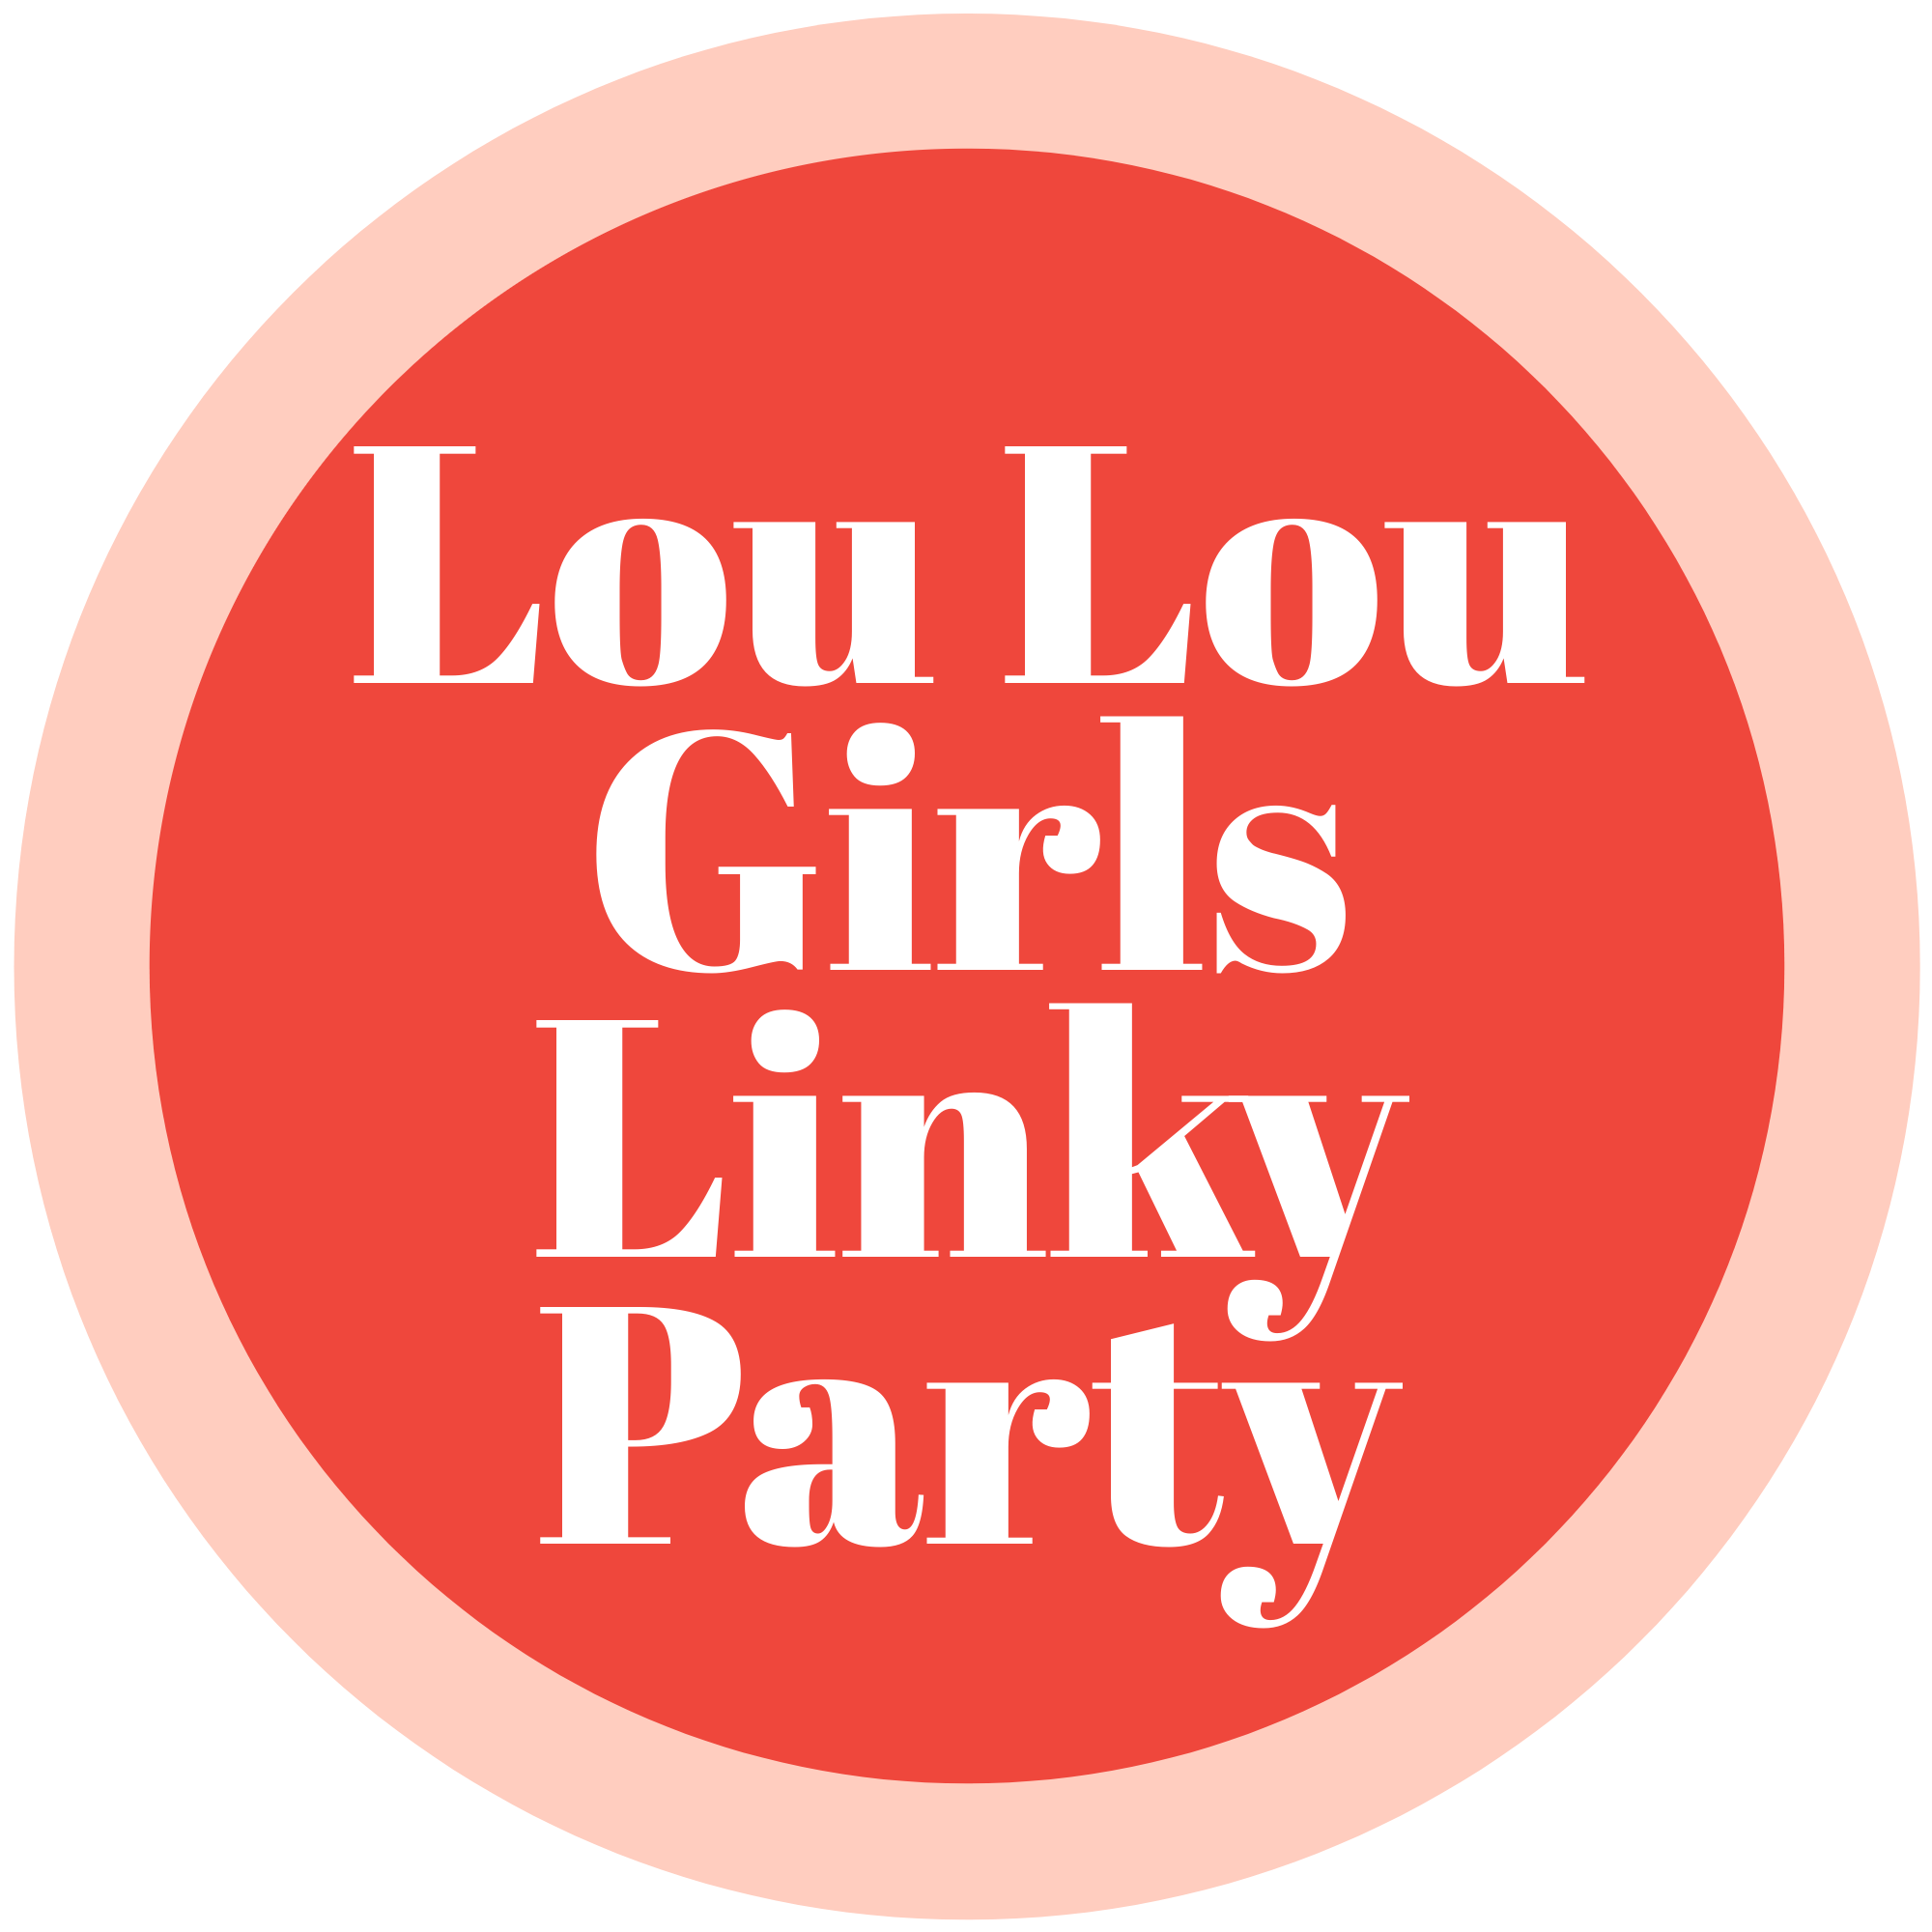 LOU LOU GIRLS FABULOUS PARTY 524